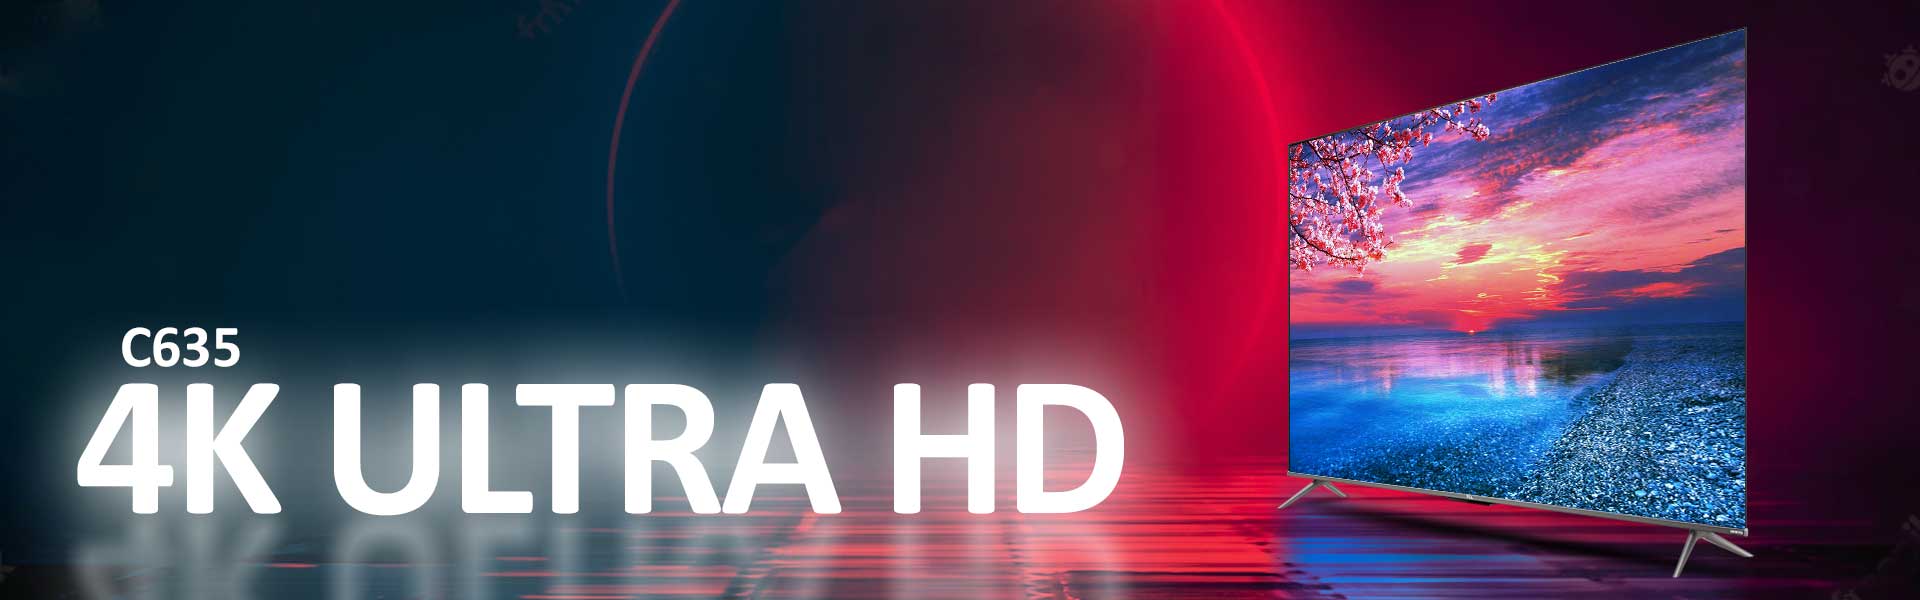 وضوح تصویر 4K ULTRA HD